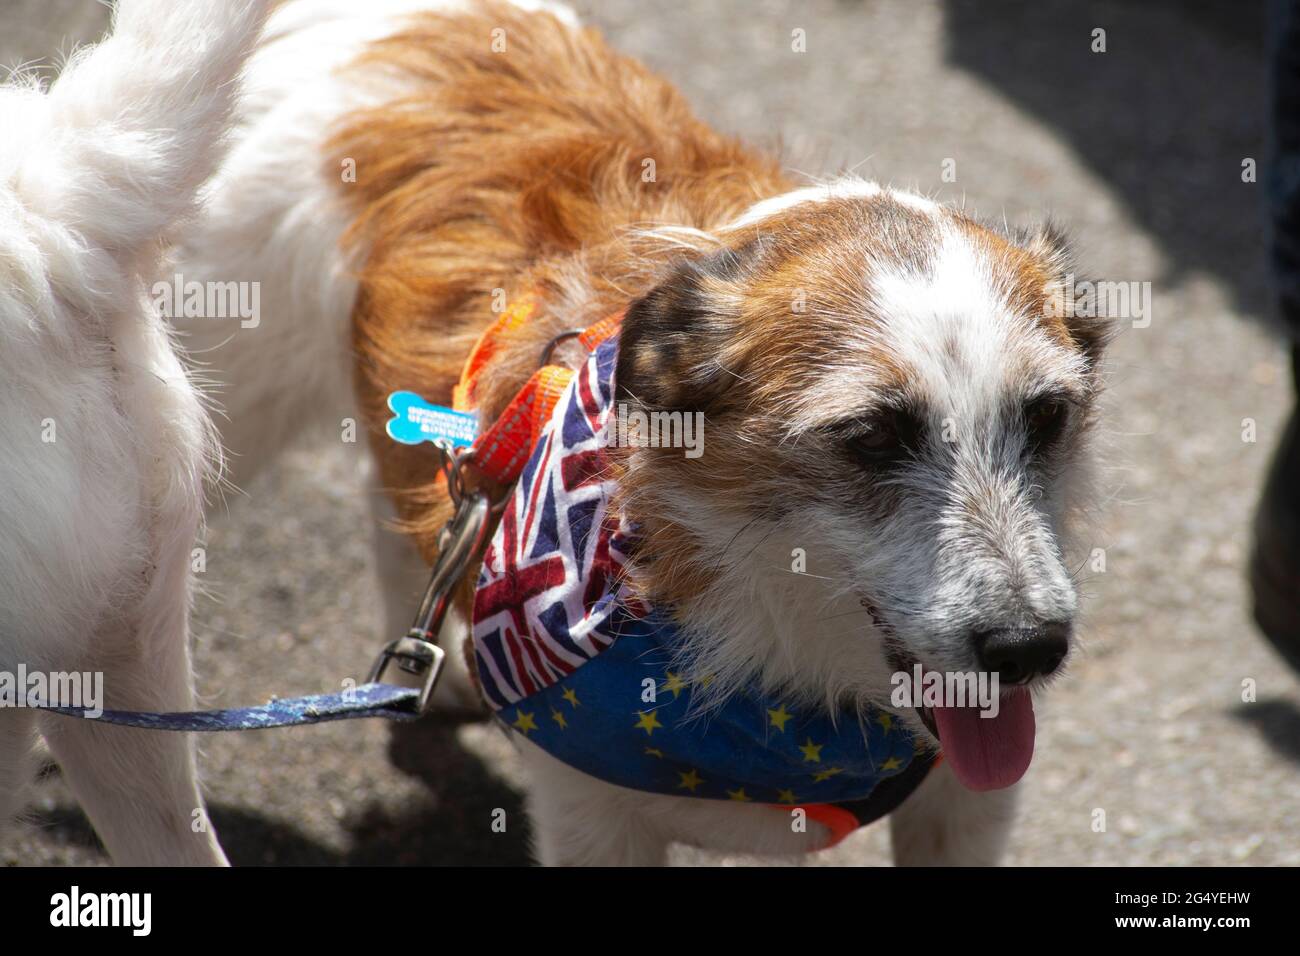 Whitehall, Londra, Regno Unito - 23 giugno 2021 - Terrier alla manifestazione a Whitehall, Londra organizzata da SODEM per celebrare il quinto anniversario della Brexi britannica Foto Stock